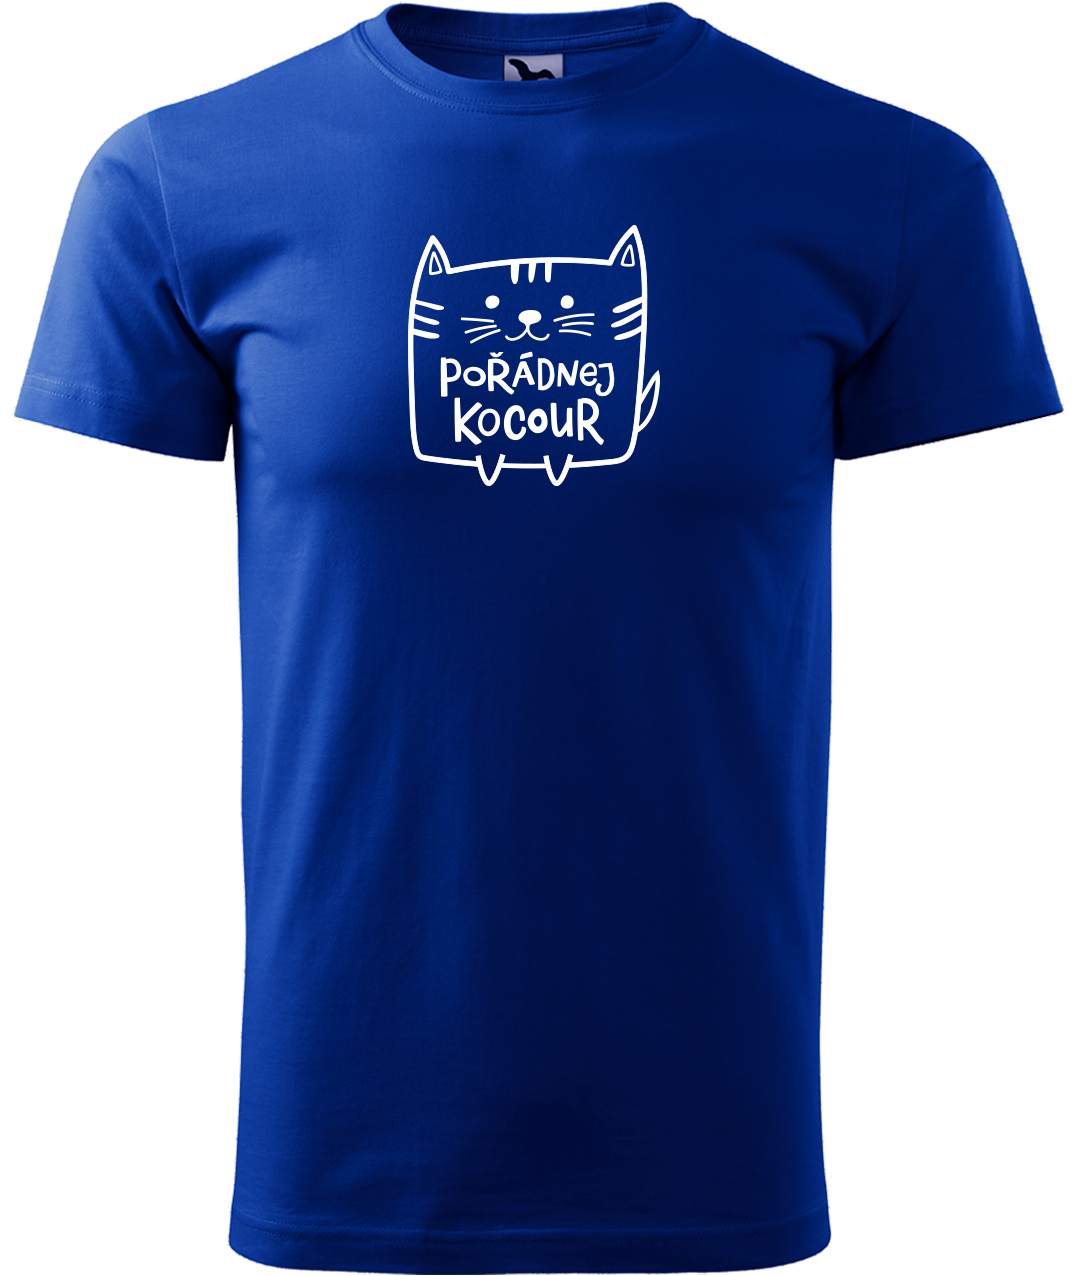 Pánské tričko s kočkou - Pořádnej kocour Velikost: M, Barva: Královská modrá (05)